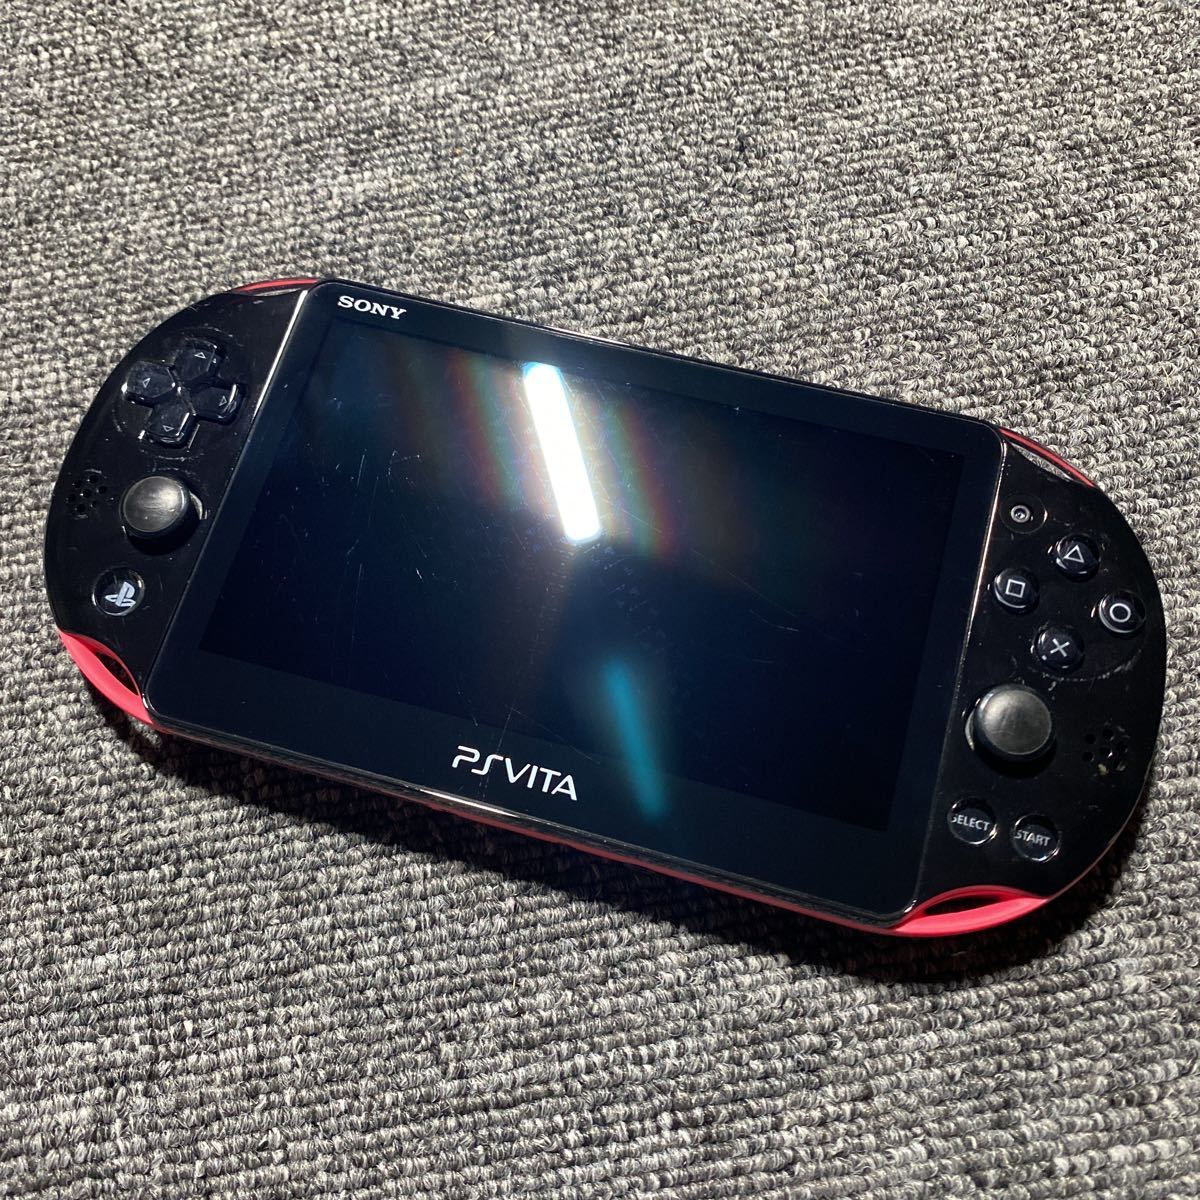 PS Vita PCH-2000 ピンク ブラック 本体のみ